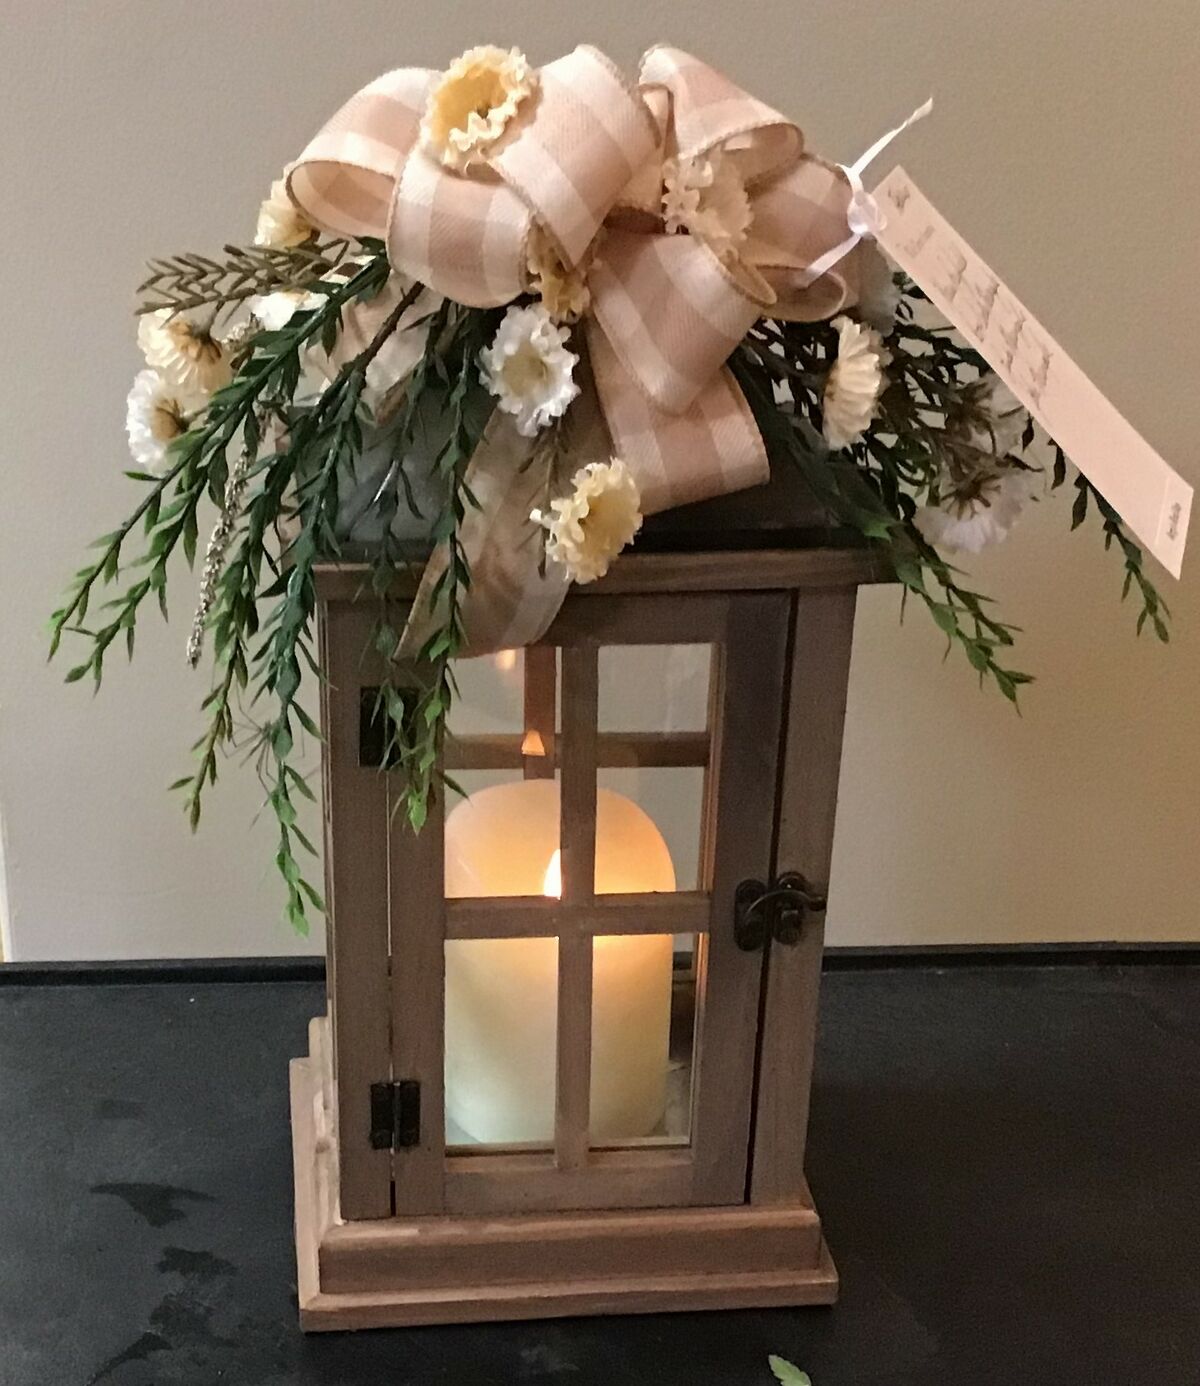 Lantern arrangement